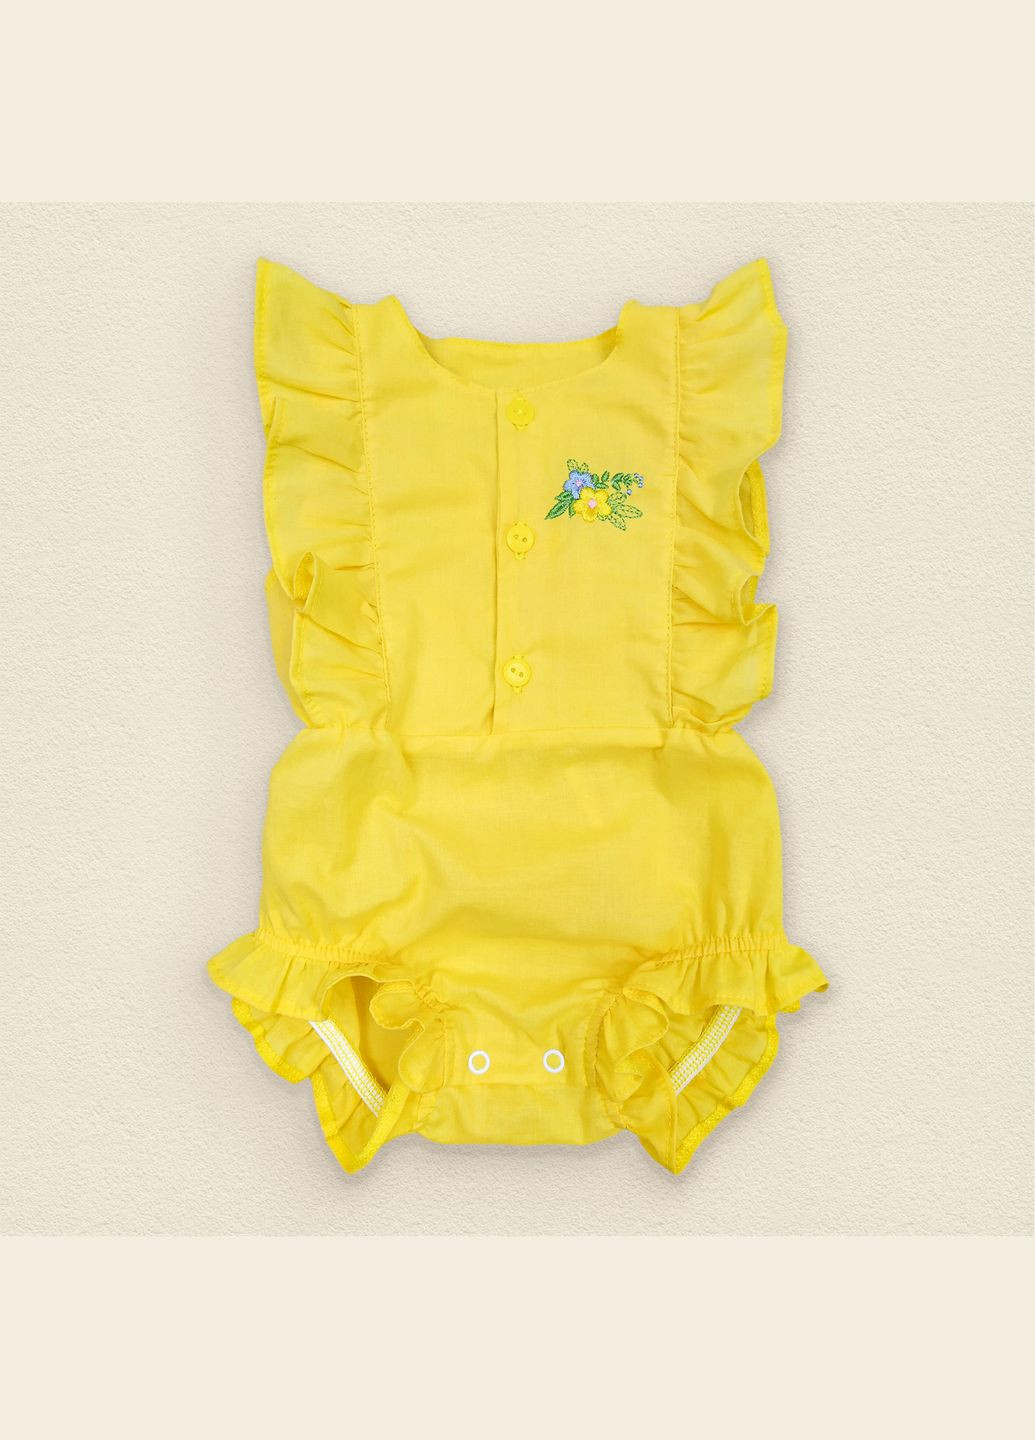 Летний песочник Dexter`s желтого цвета для девочки sunny flower желтый dexter's (279760850)